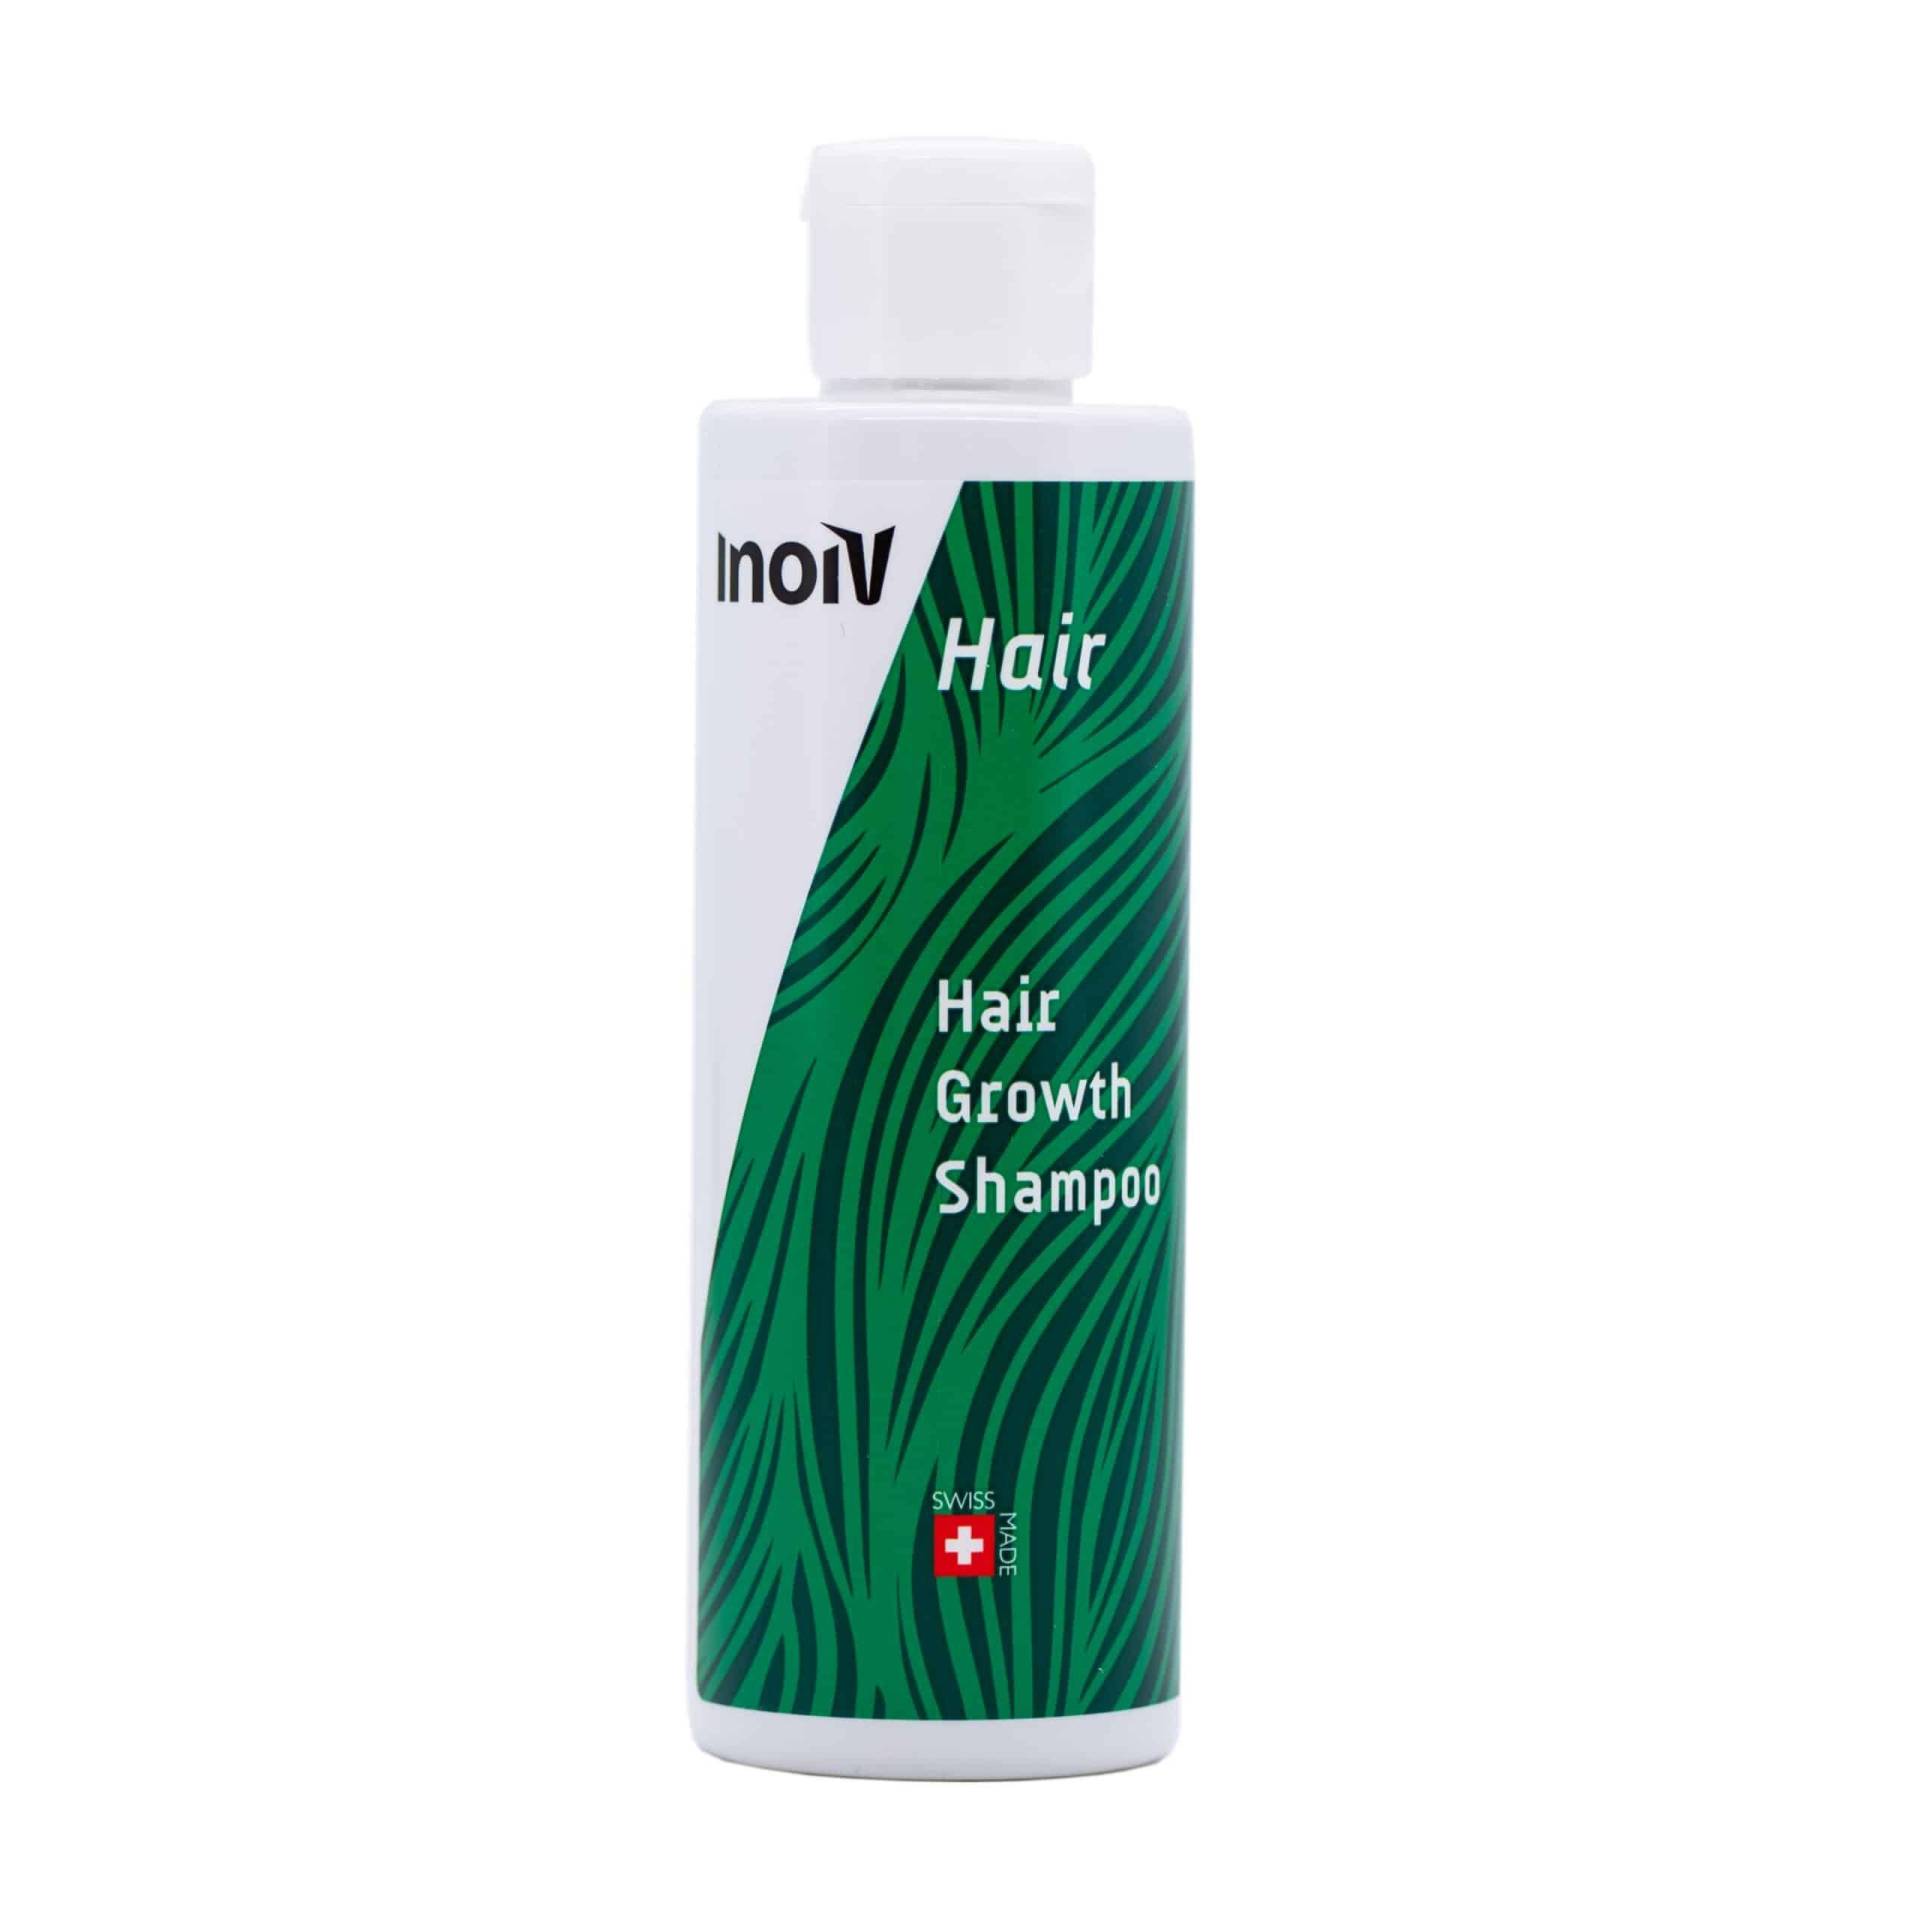 Hair Growth Shampoo Damen  200ml von Inoiv Hair